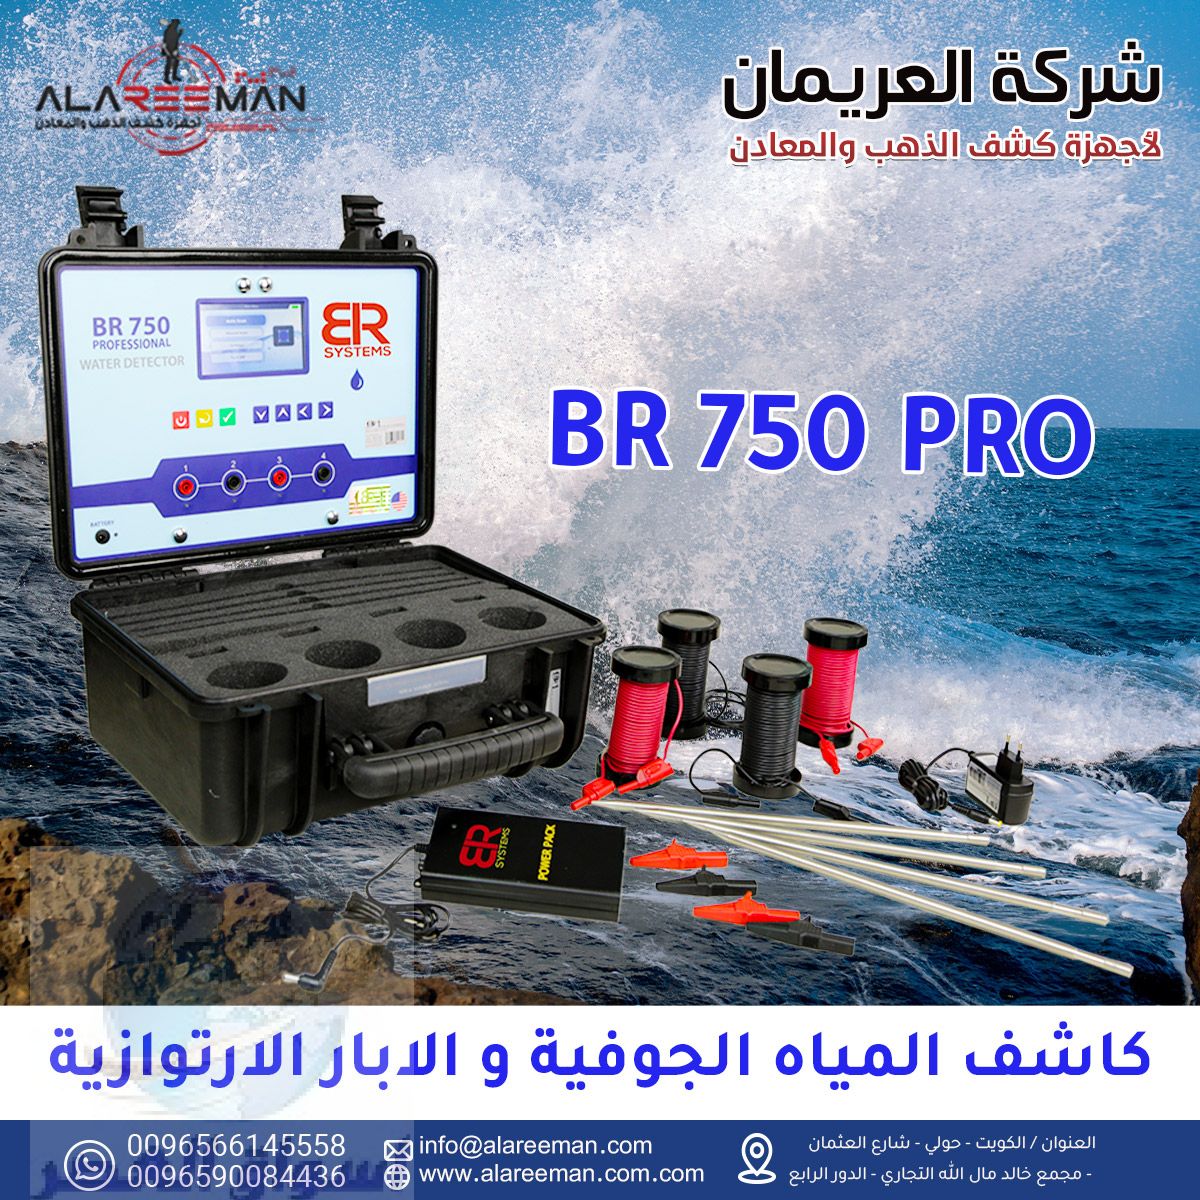 جهاز BR750 PRO الجيوفيزيائي لكشف المياه الجوفيه